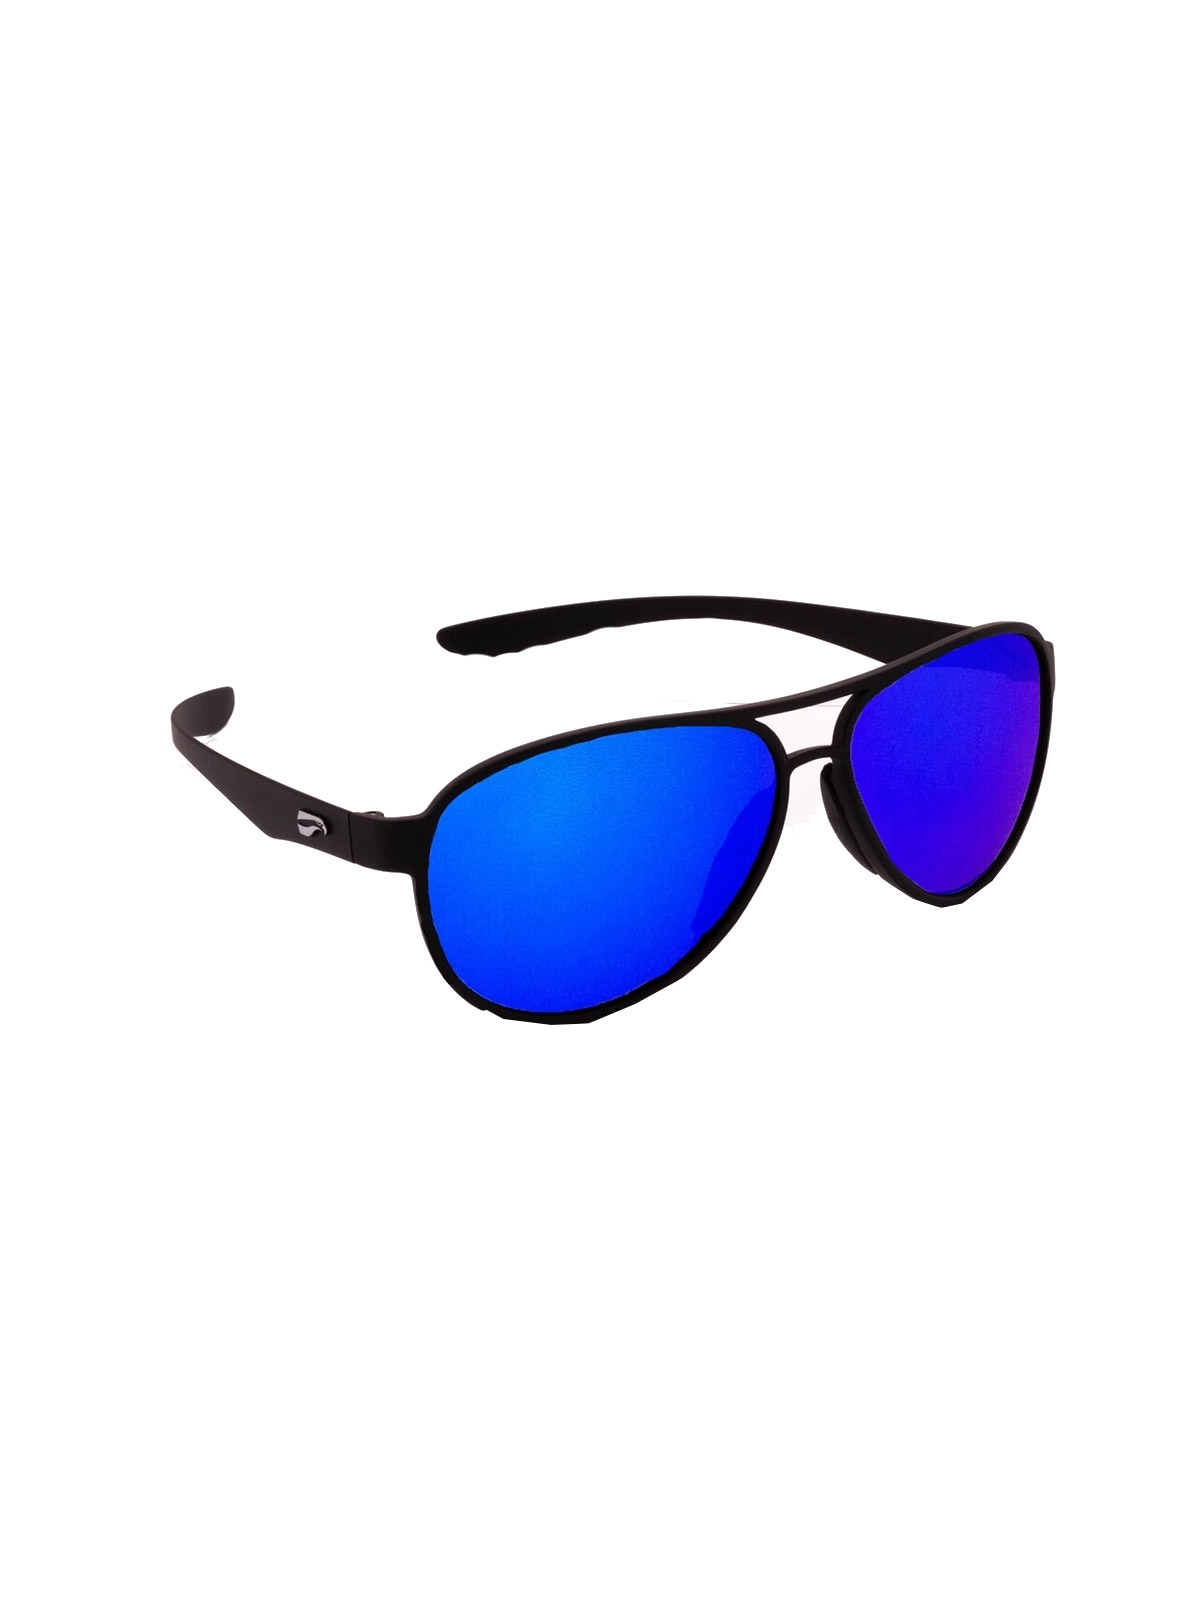 Flying Eyes Sonnenbrille Kestrel Aviator - Rahmen matt schwarz, Linsen saphirblau (verspiegelt)